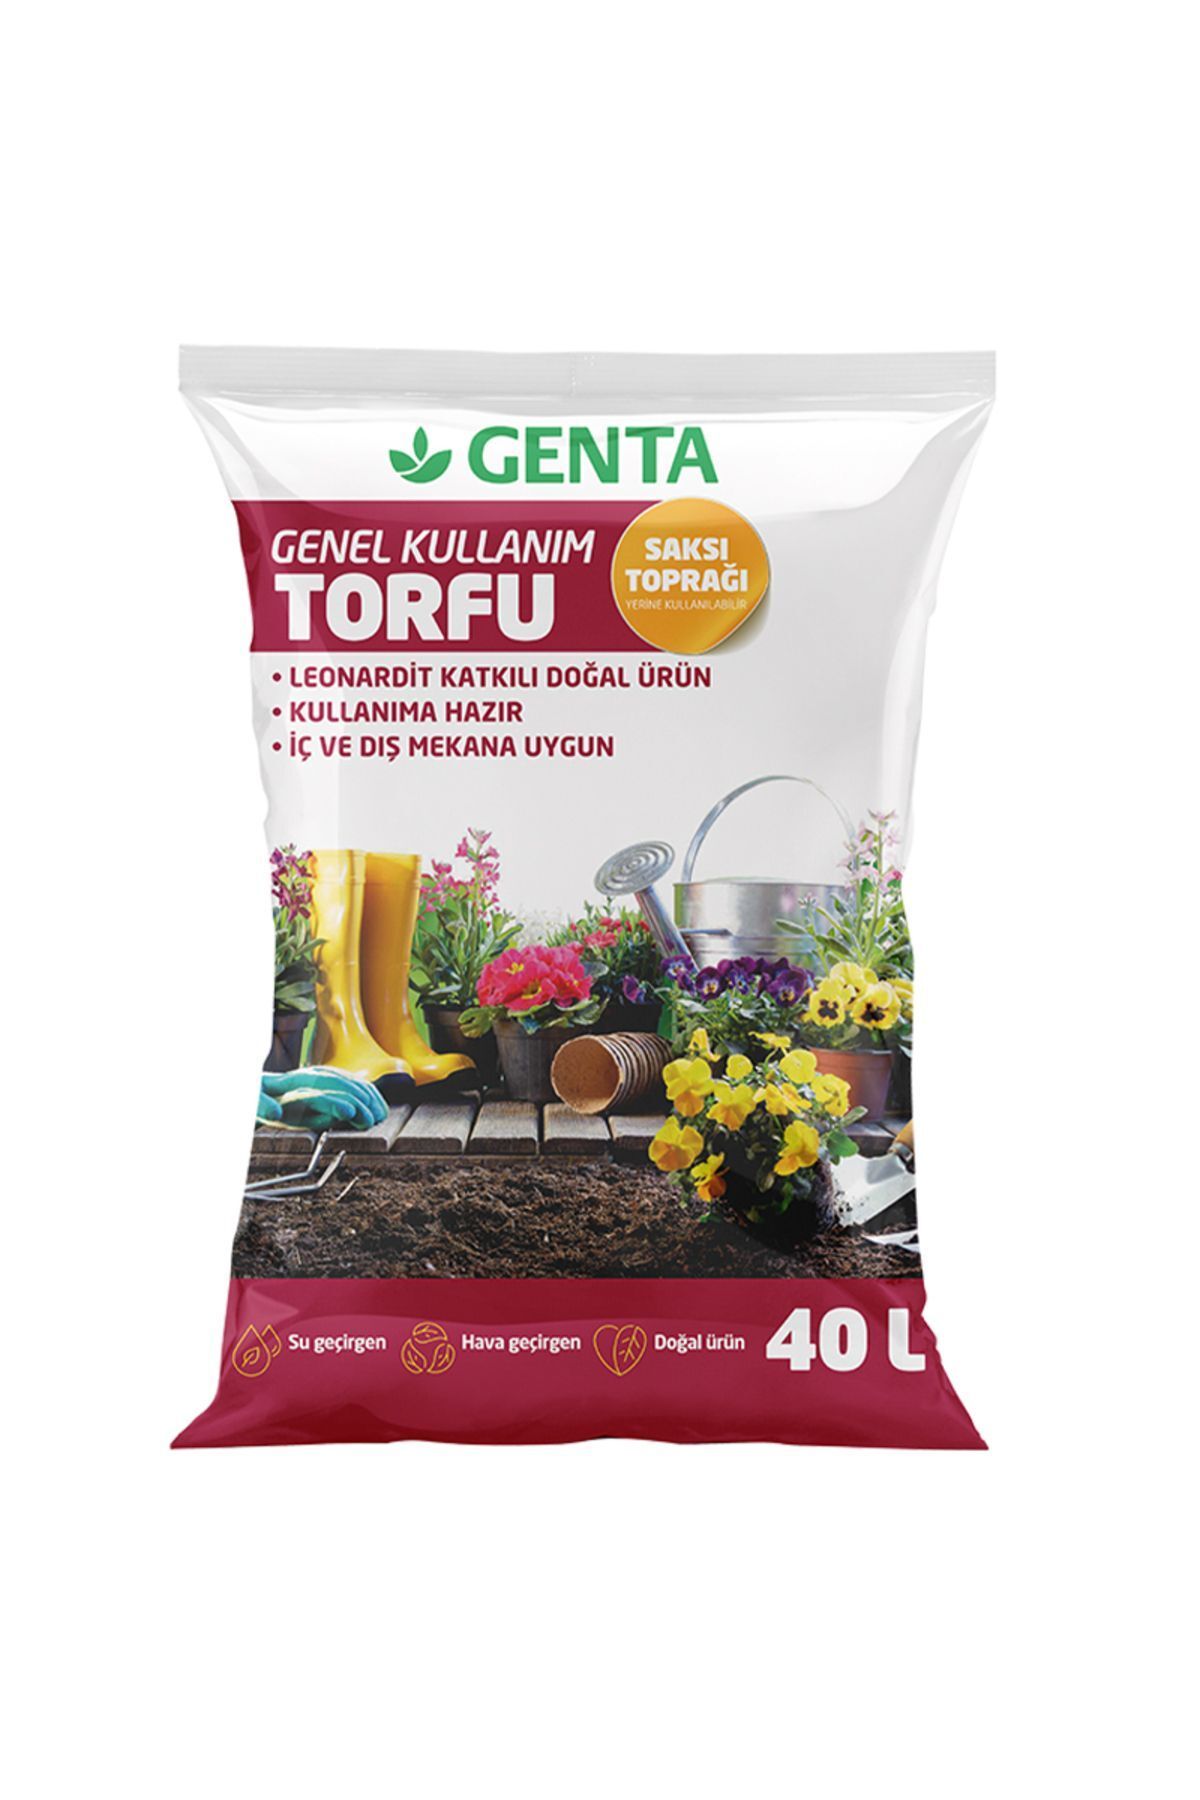 Genta Genel Kullanım Torfu Saksı Toprağı 40 Lt